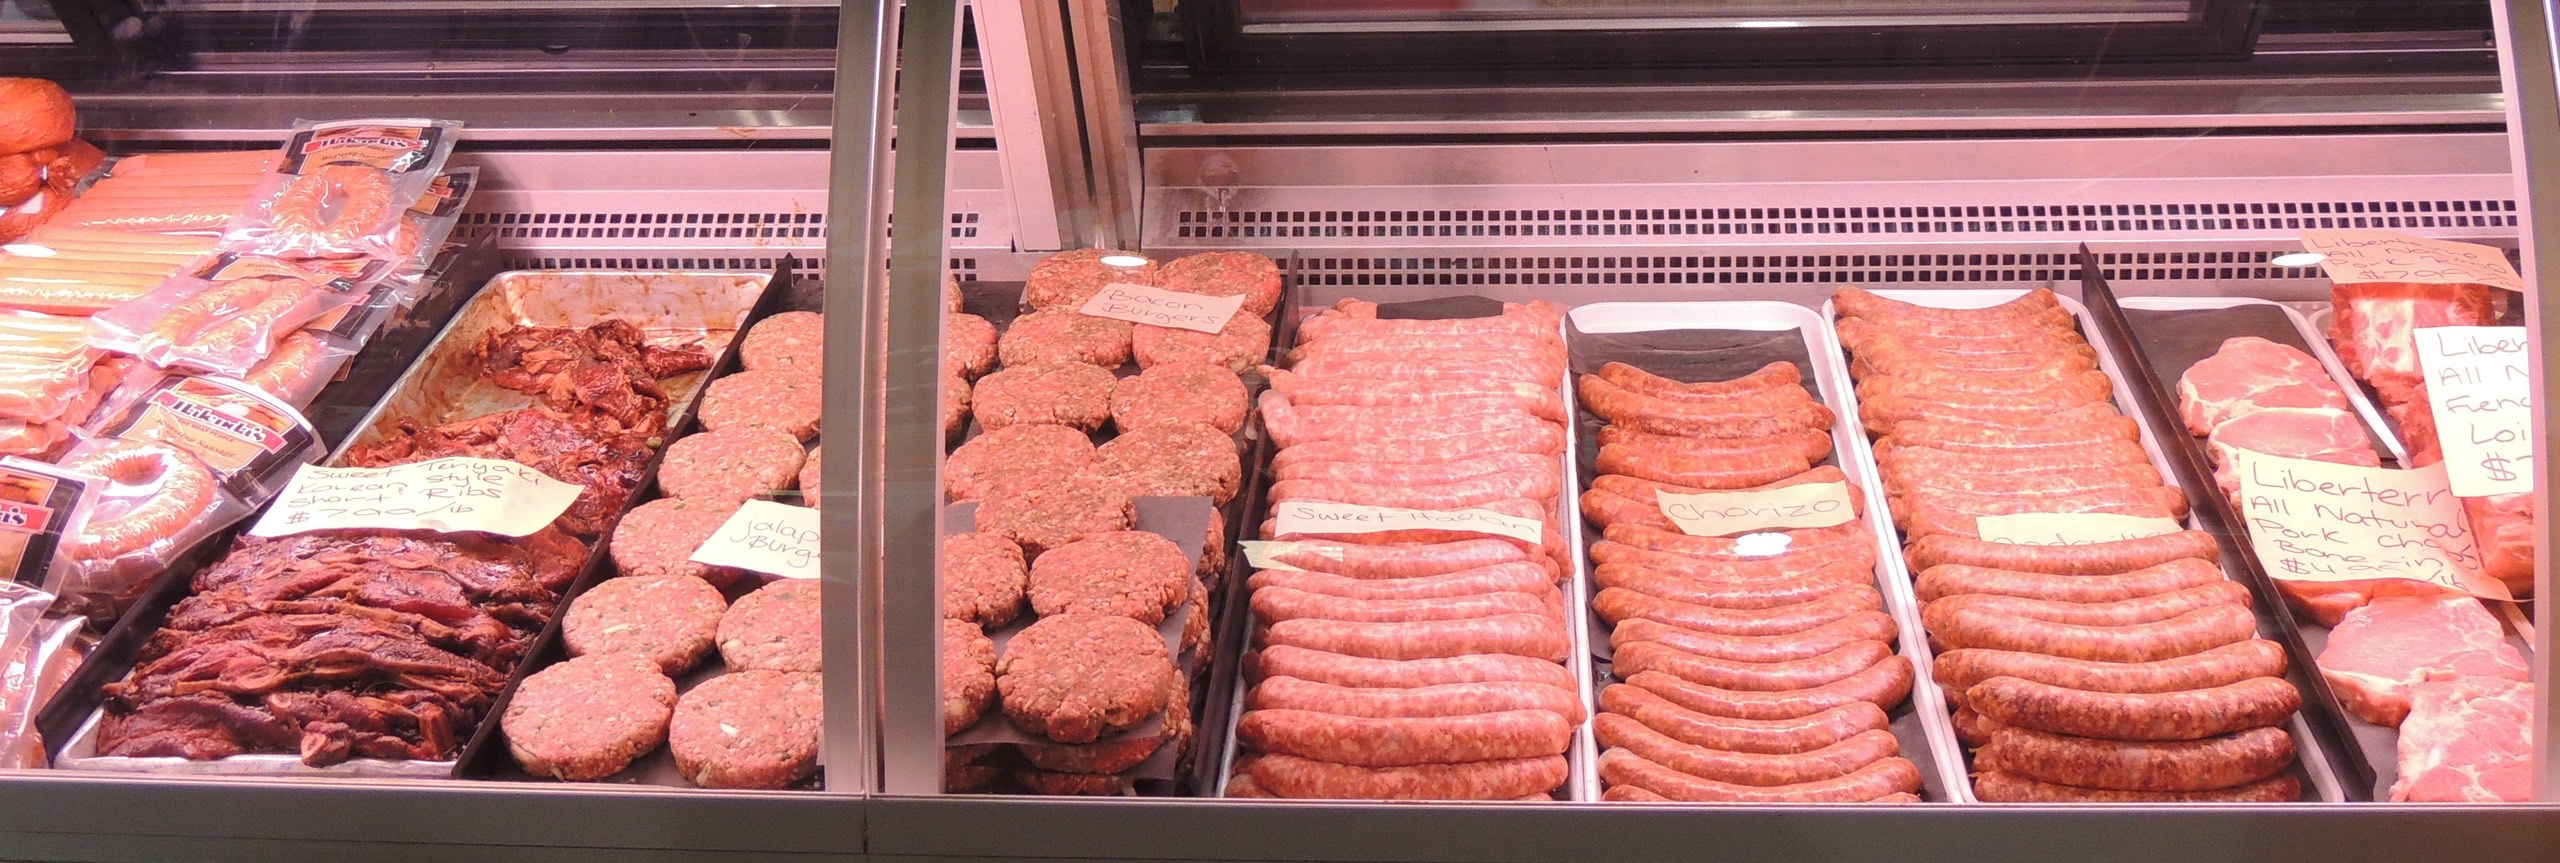 vitrine van slagerij met verschillende vleeswaren gepresenteerd